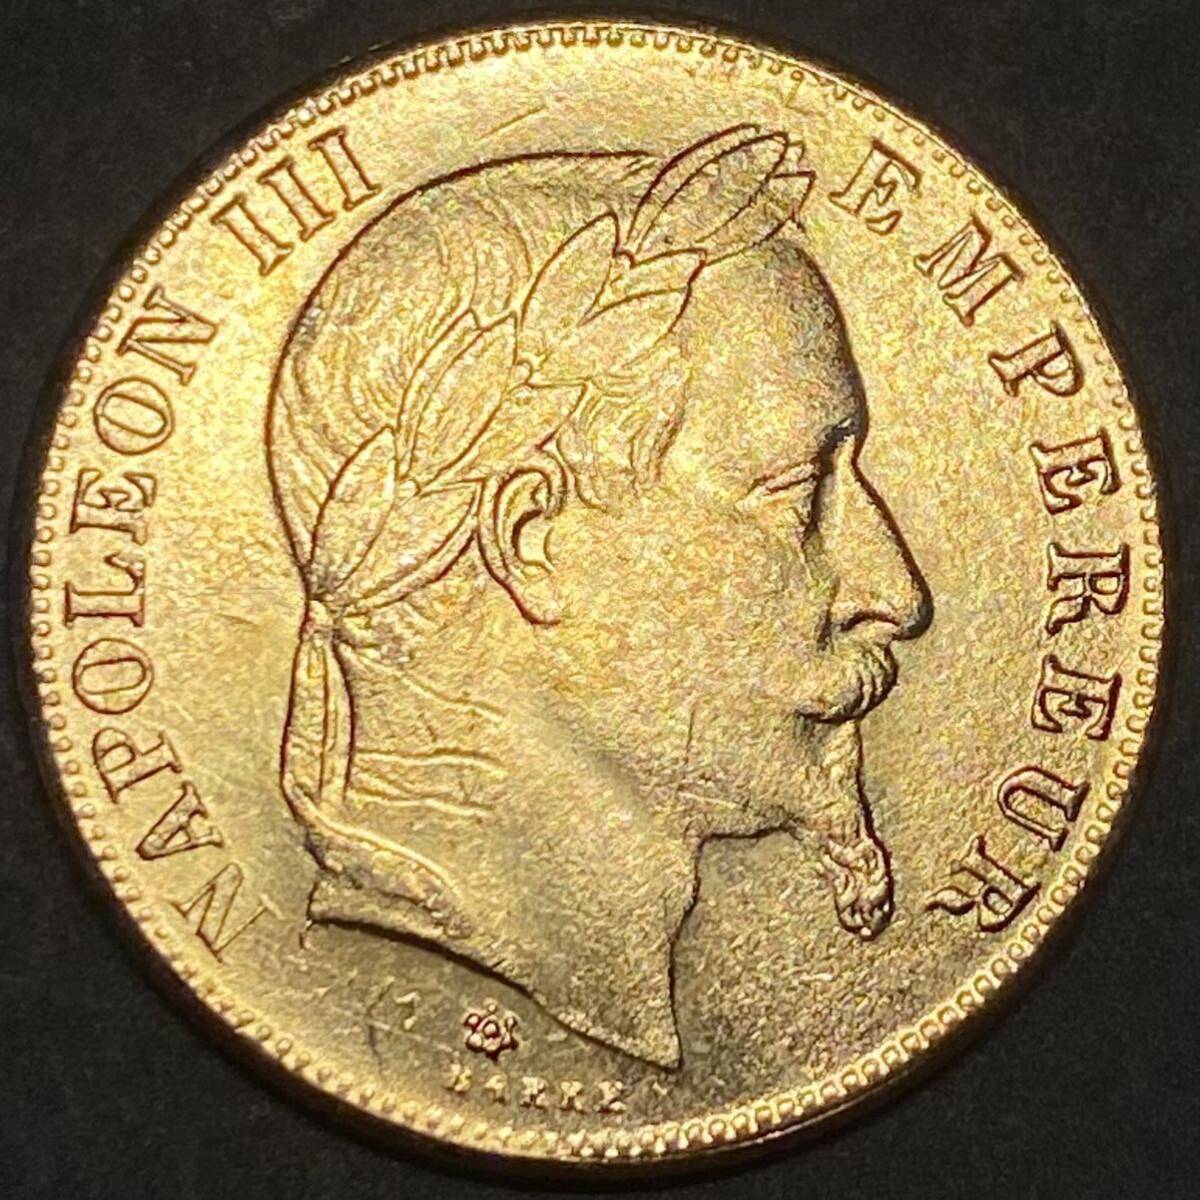 ナポレオン3世 金貨 フランス 古銭 50フラン 1859年 約11.86g イエローゴールド コレクションの画像1